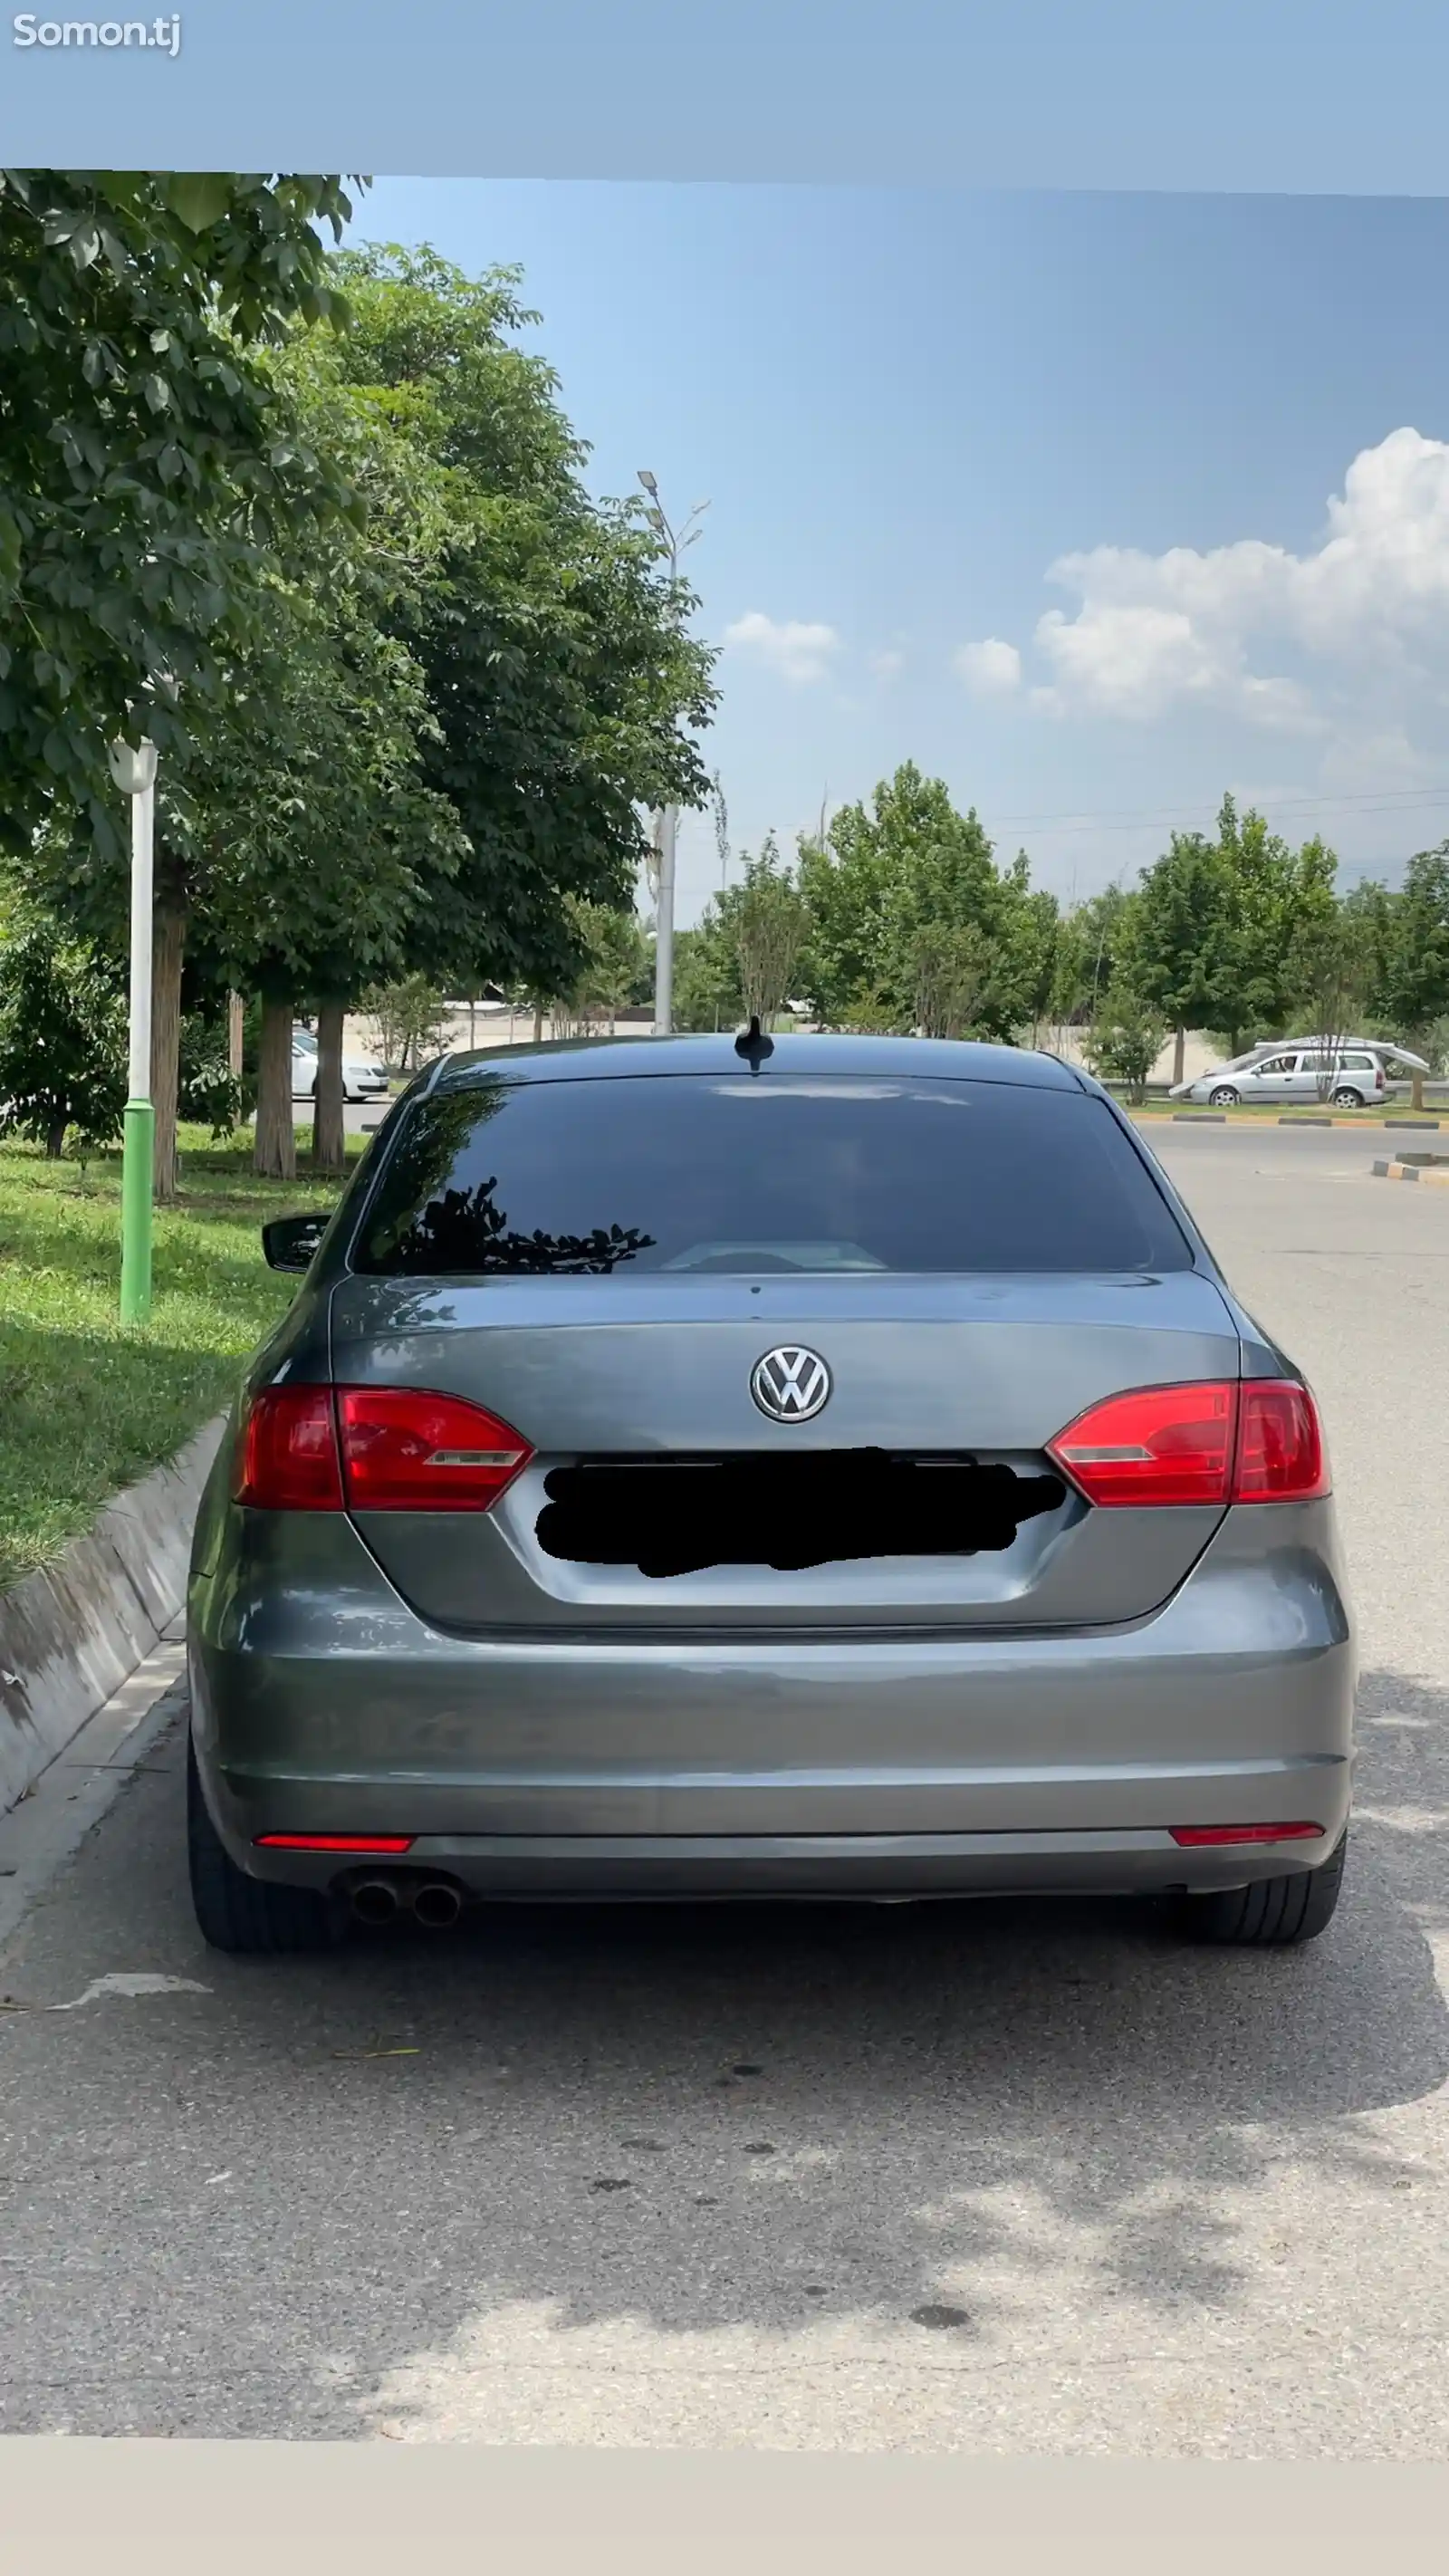 Volkswagen Jetta, 2010-2